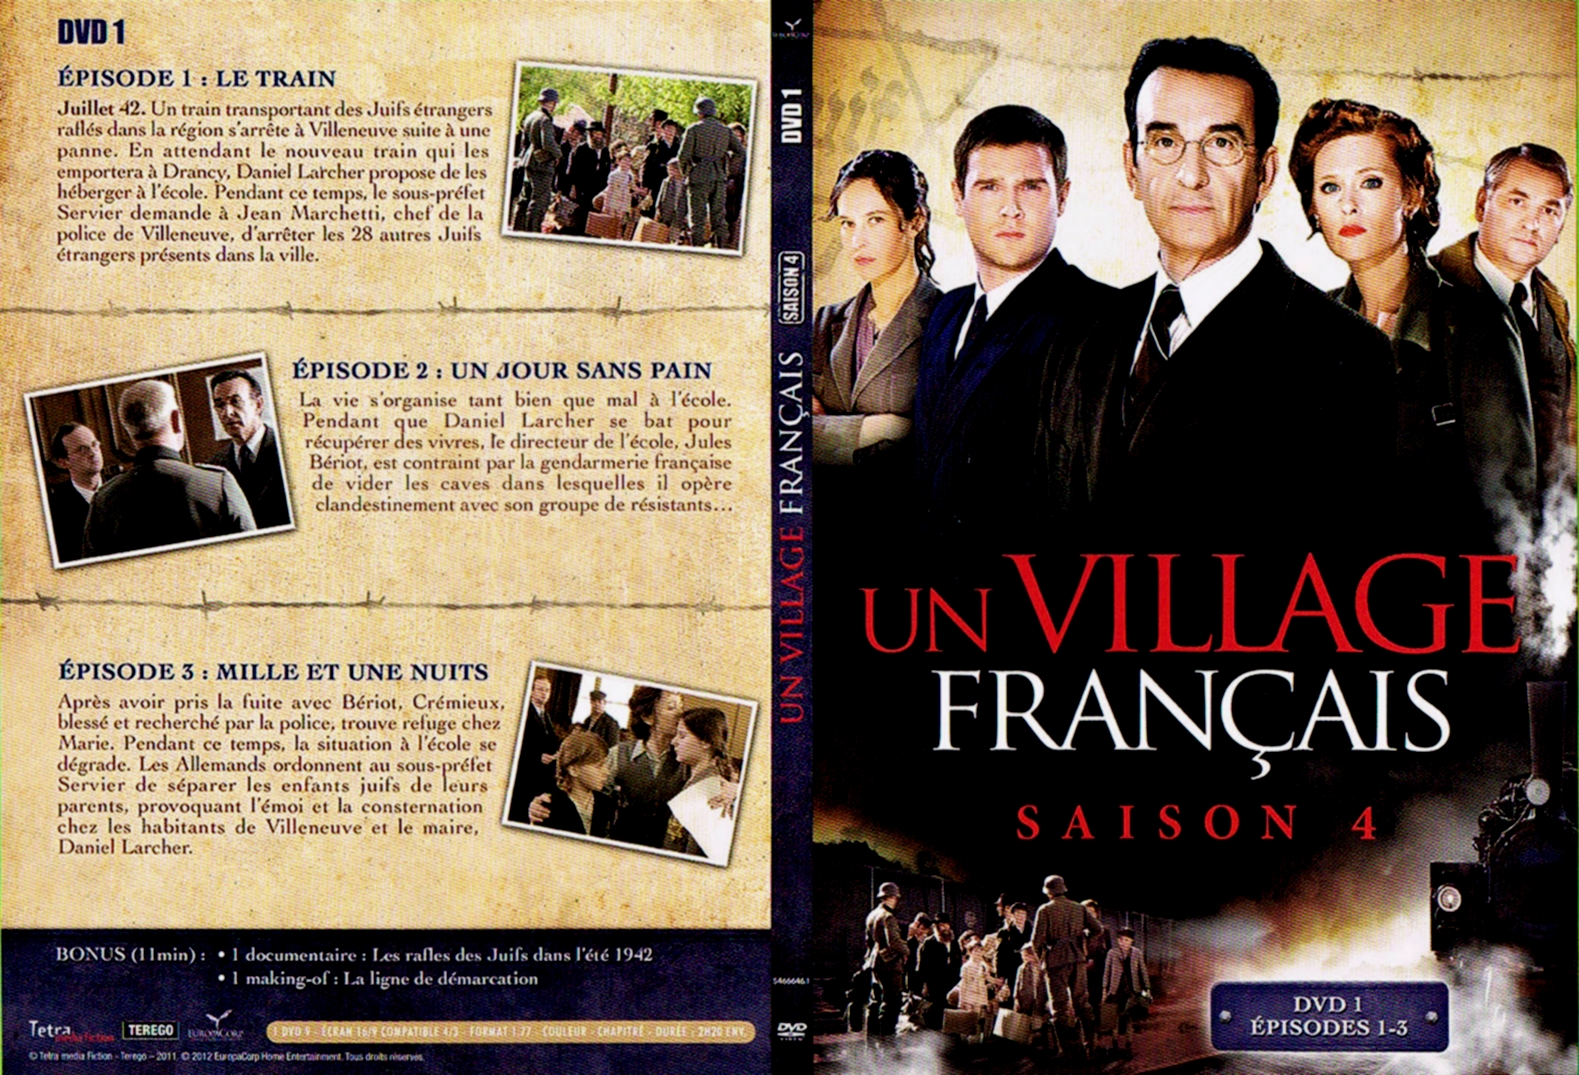 Jaquette DVD Un village francais Saison 4 DVD 1